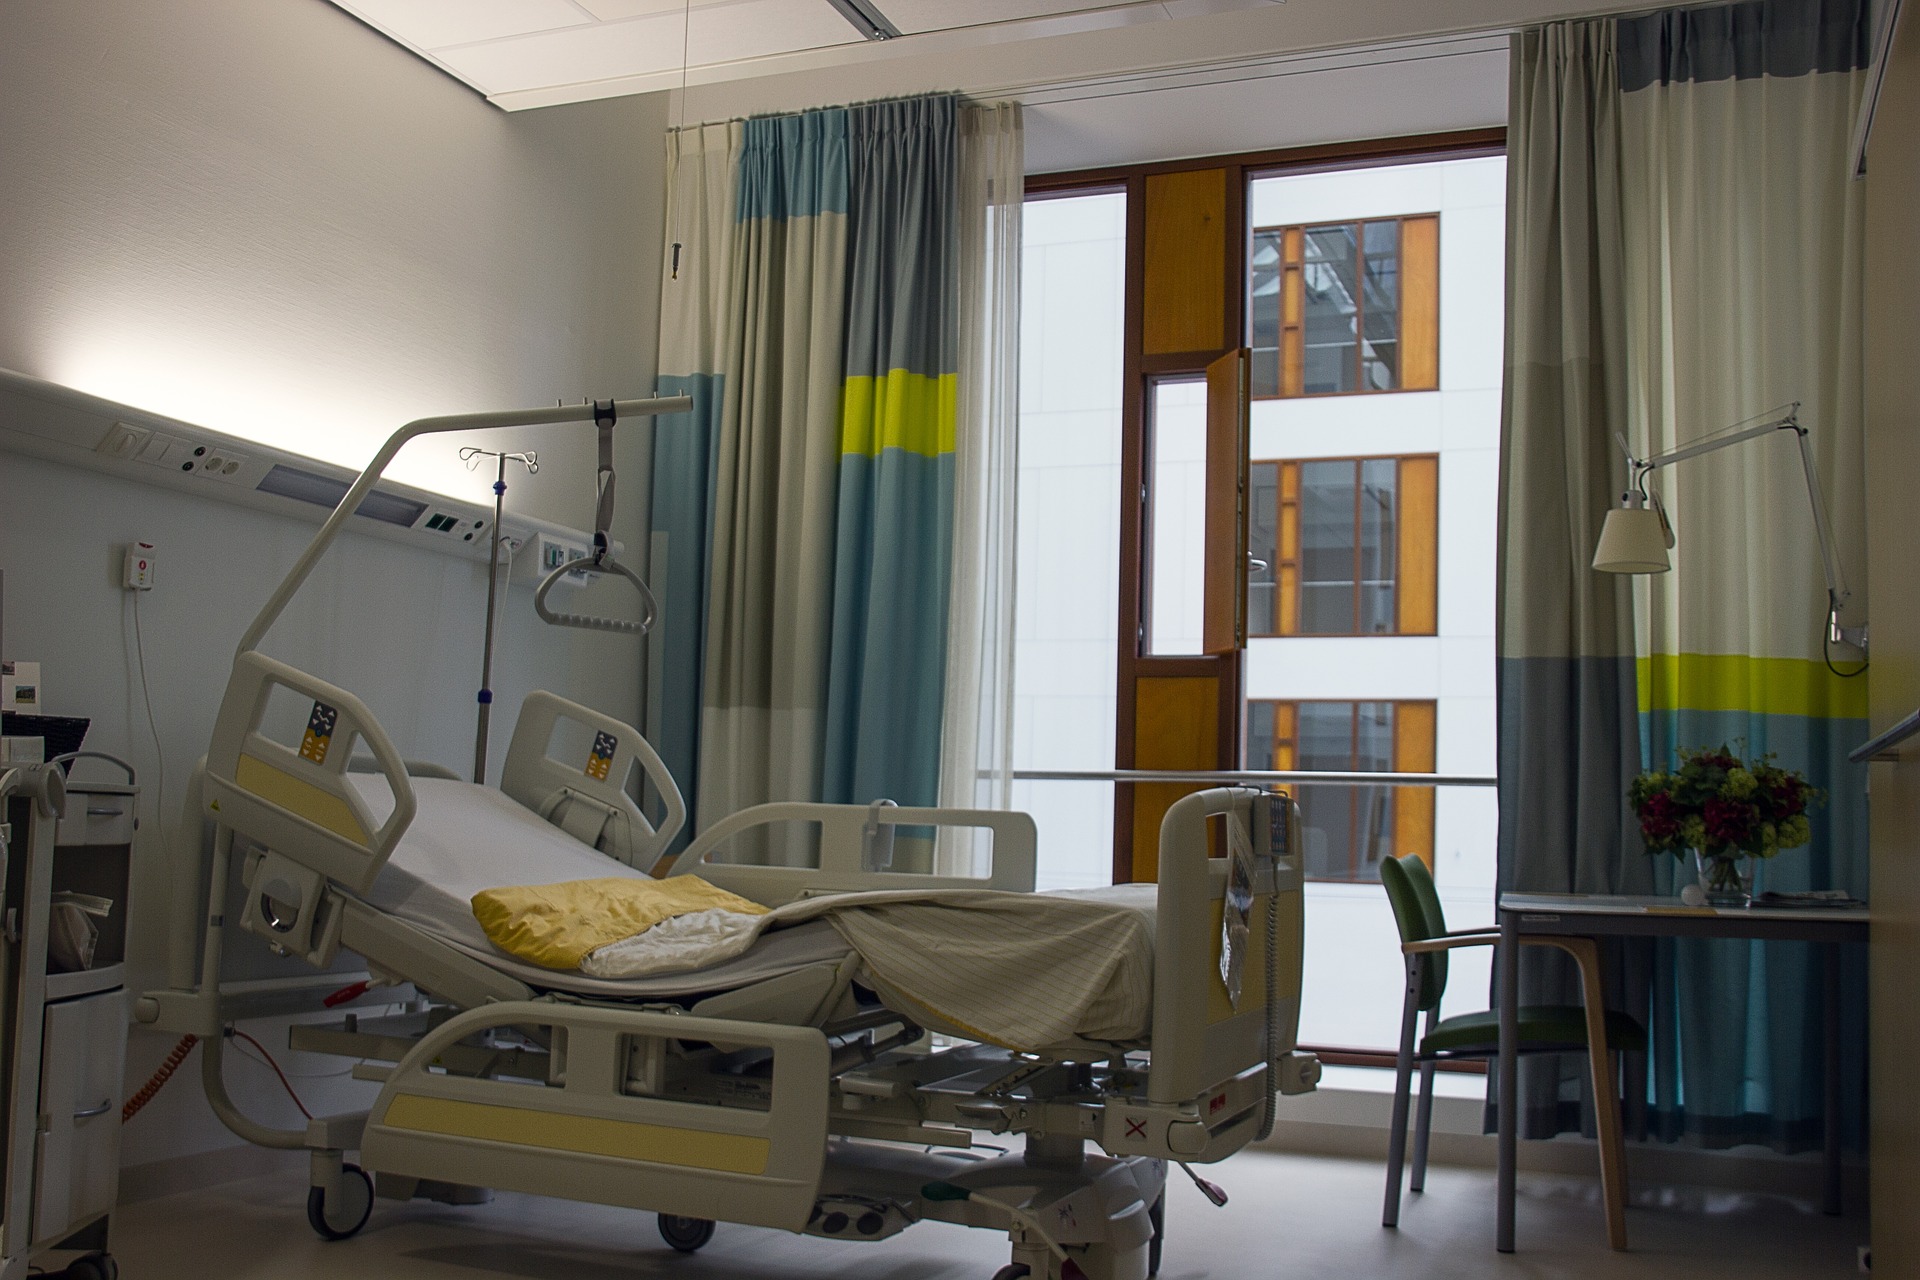 Le Haut conseil de l’Assurance maladie prône la création de 50-100 petits hôpitaux